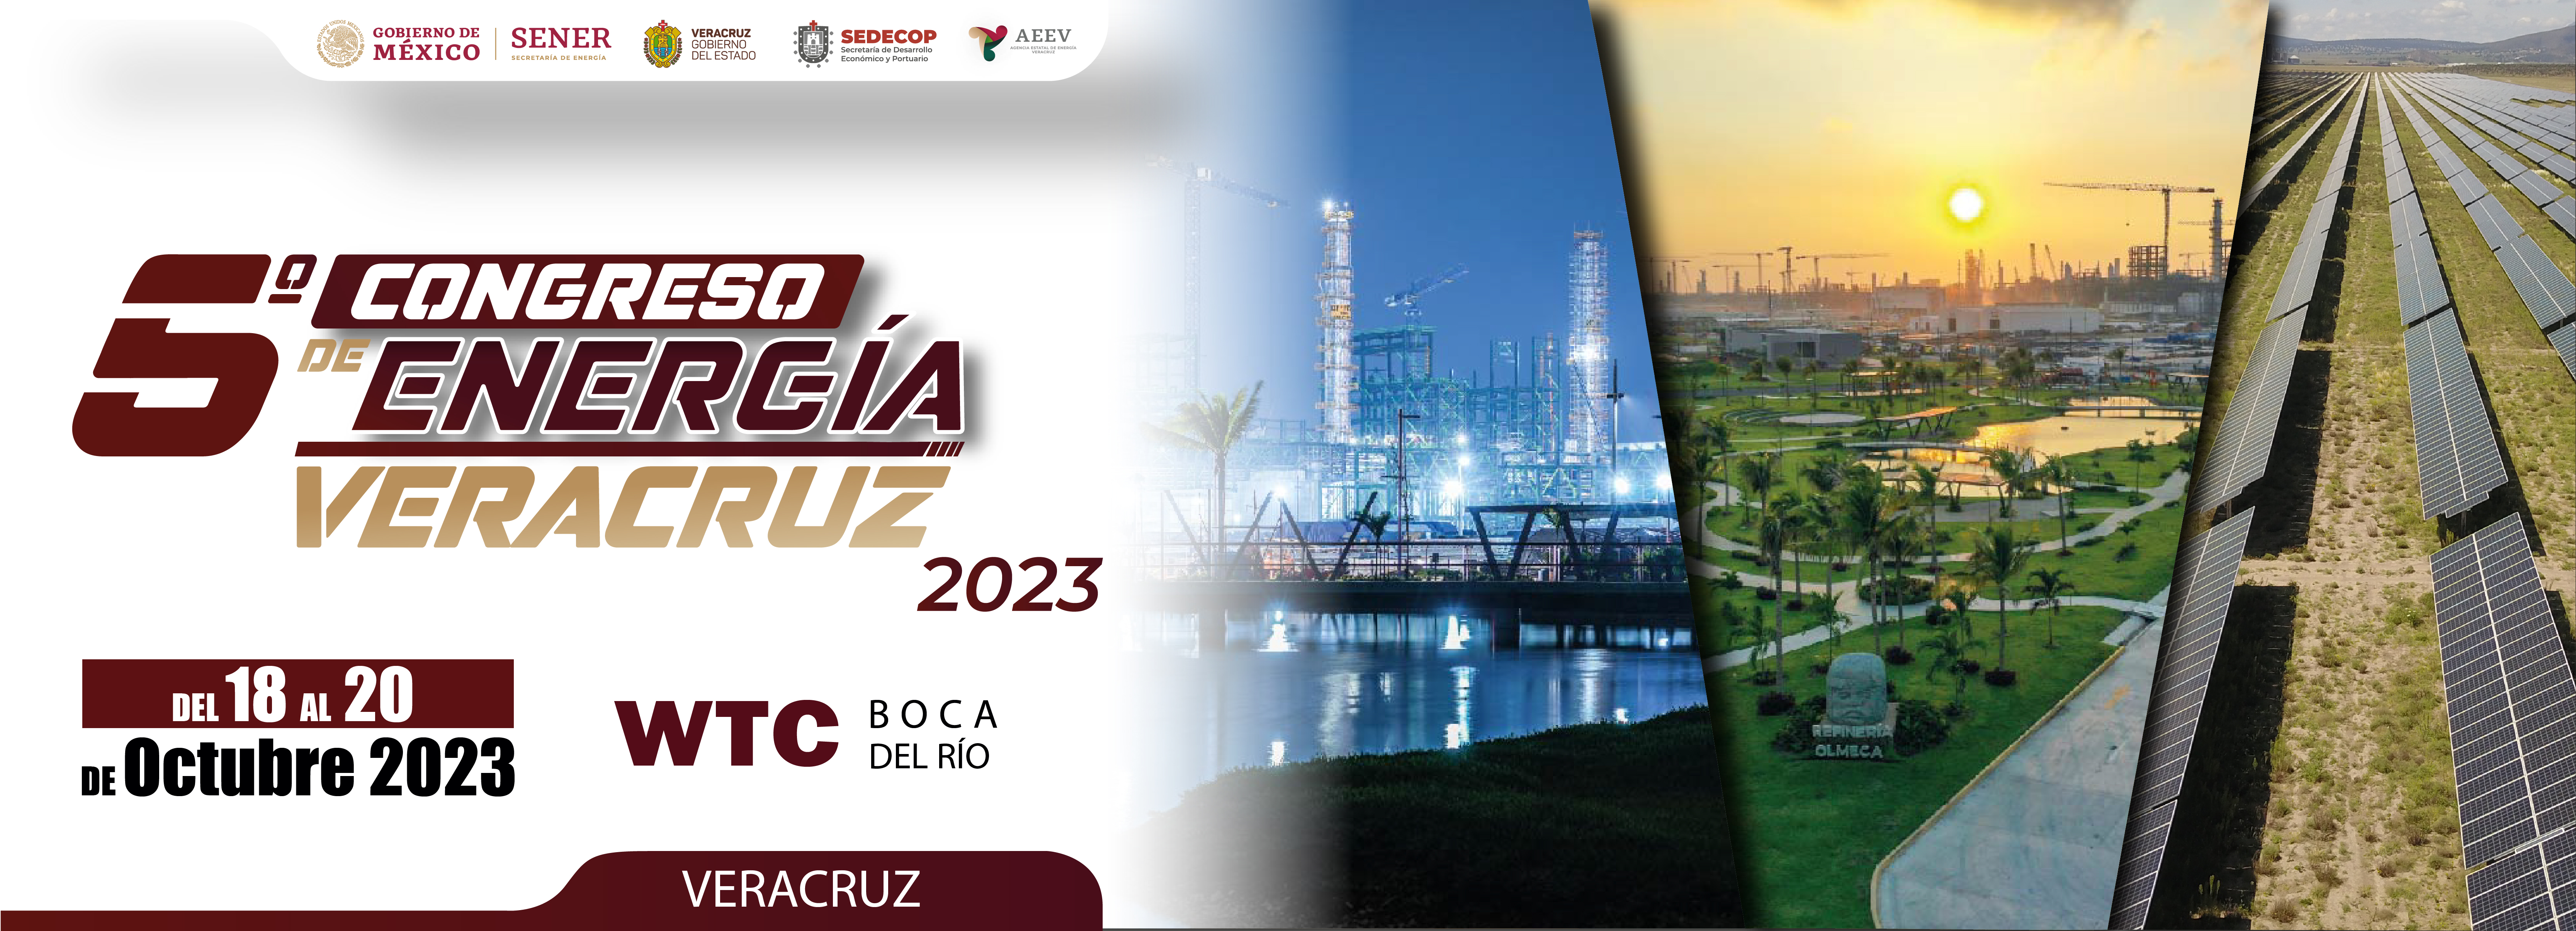 Congreso de Energía Veracruz 2023_Mesa de trabajo 1